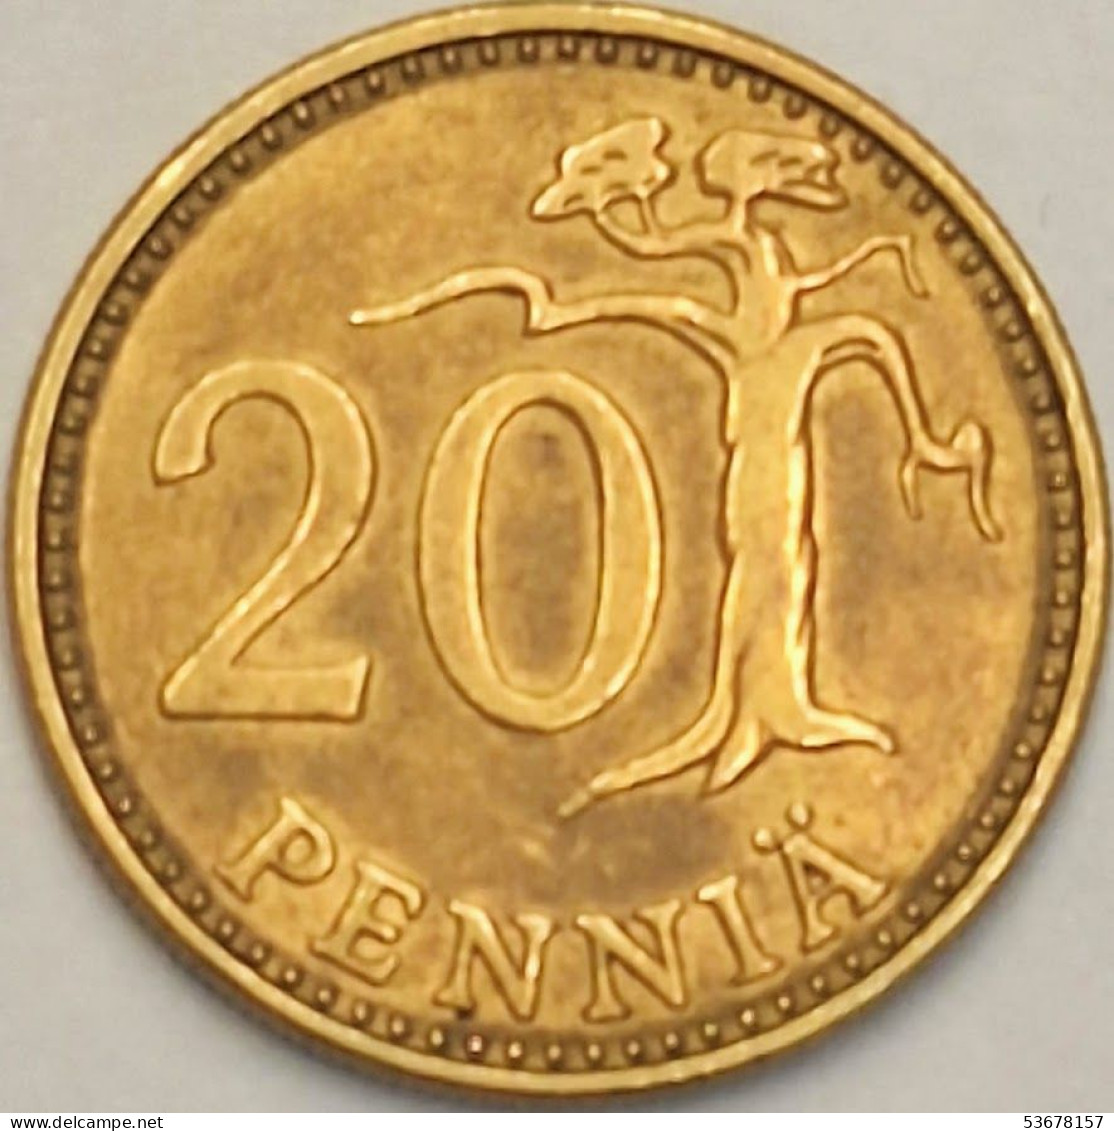 Finland - 20 Pennia 1973 S, KM# 47 (#3930) - Finland